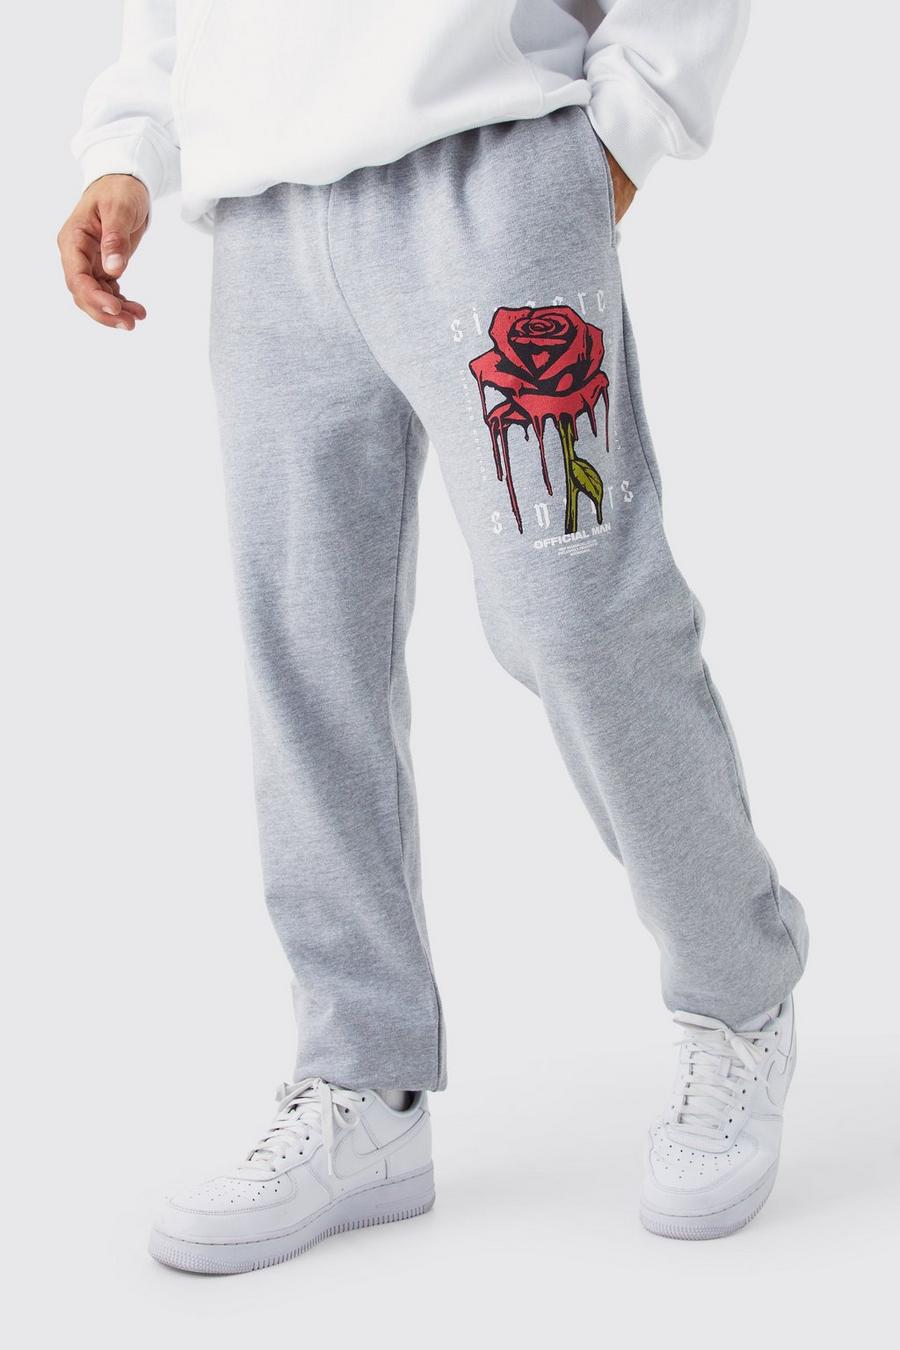 Pantalón deportivo con estampado gráfico de rosas, Grey marl